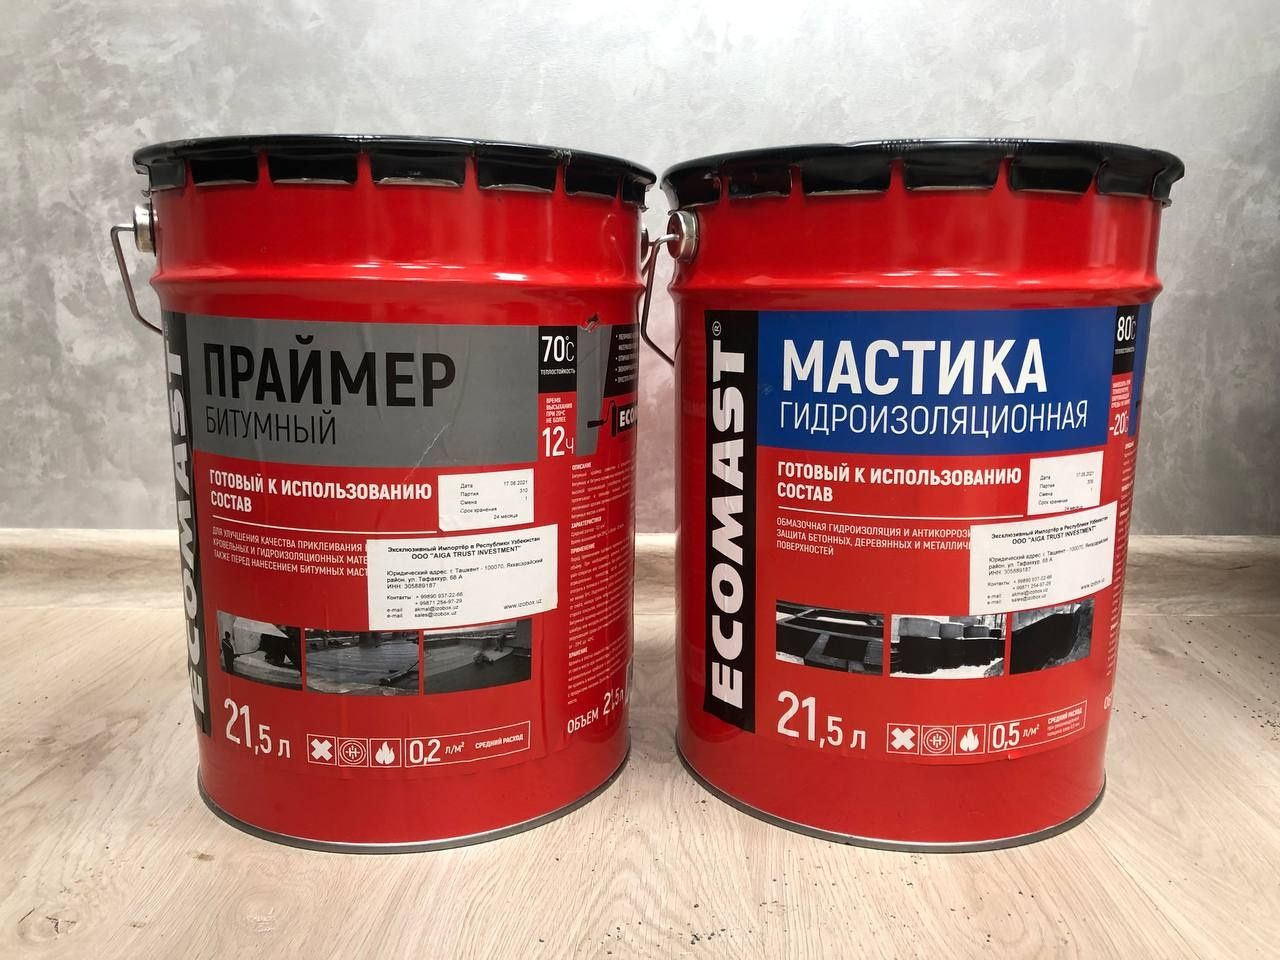 Мастика гидроизоляционная и Праймер бытумный 21,5 литр (Россия)